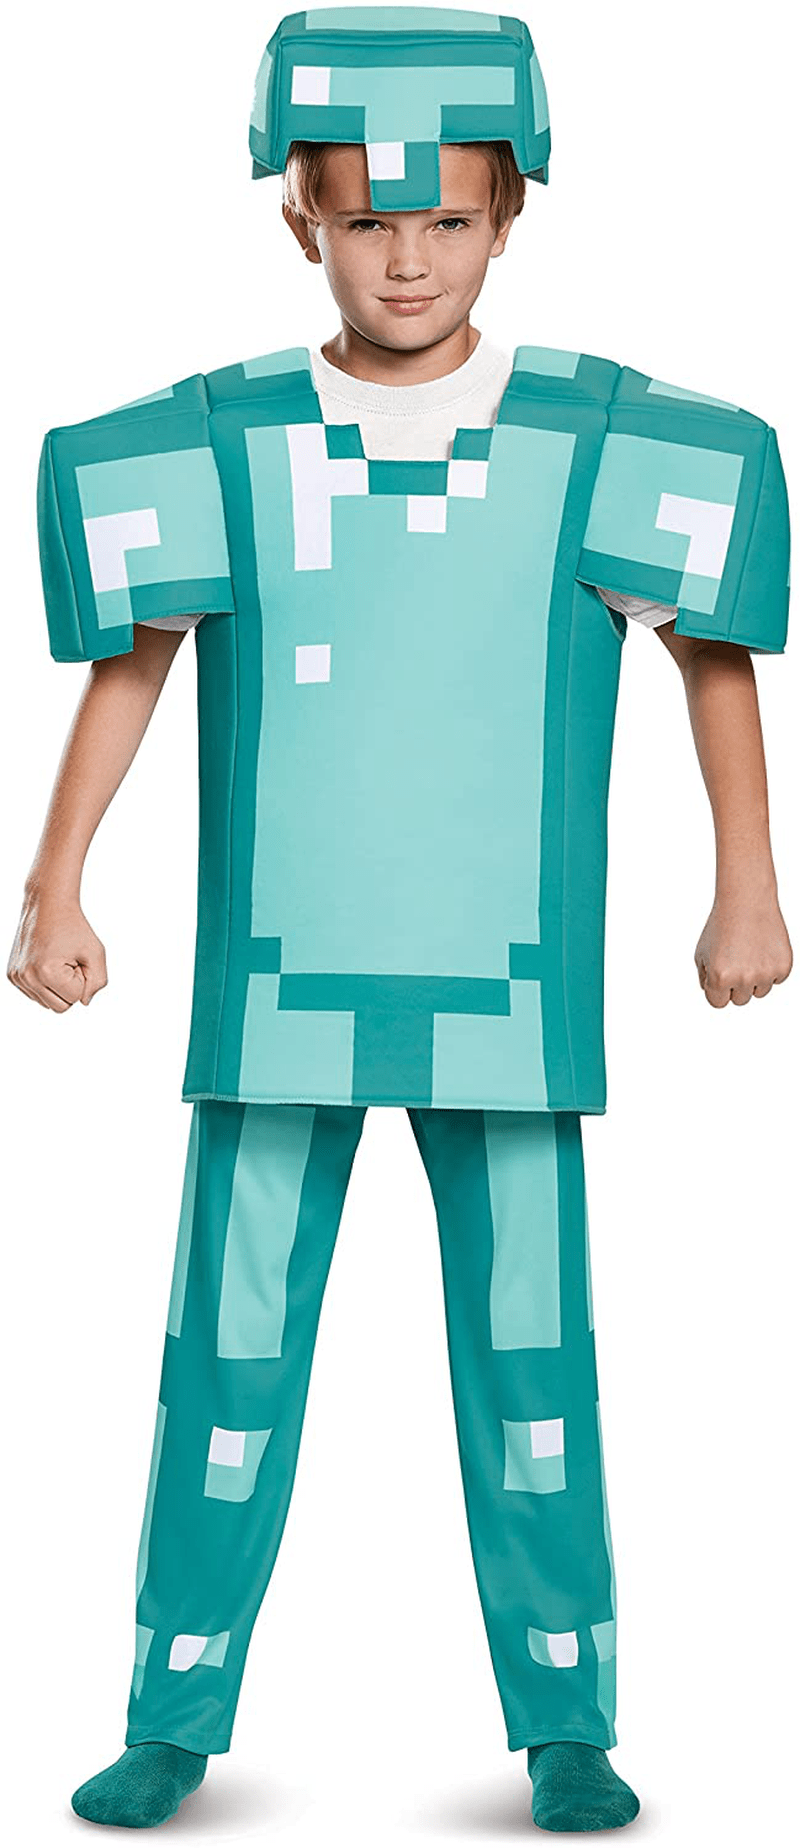 Armor Deluxe Minecraft Costume, Blue, Medium (7-8) Apparel & Accessories > Costumes & Accessories > Costumes Disguise   